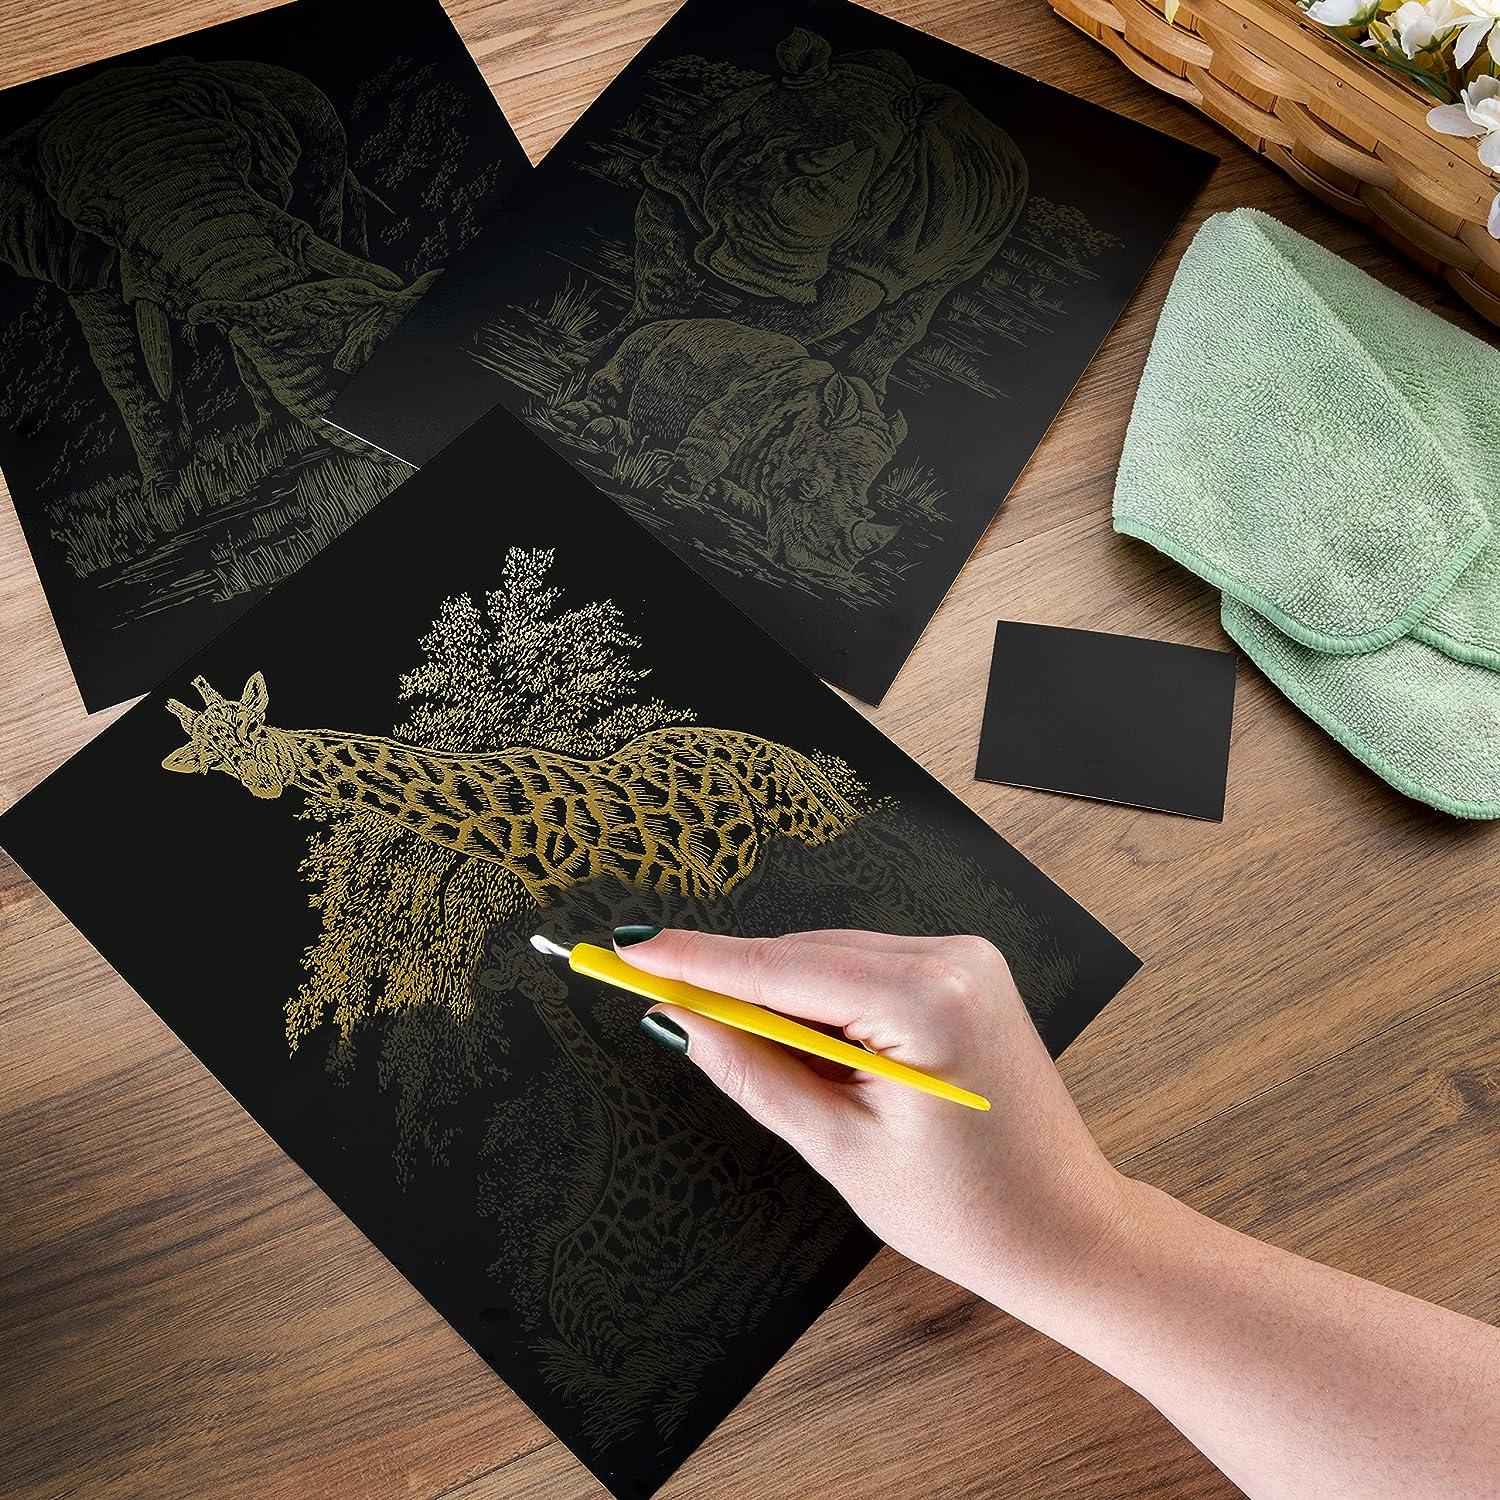 Royal & Langnickel(R) Holographic Foil Engraving Kit 5X7-Bamboo Panda